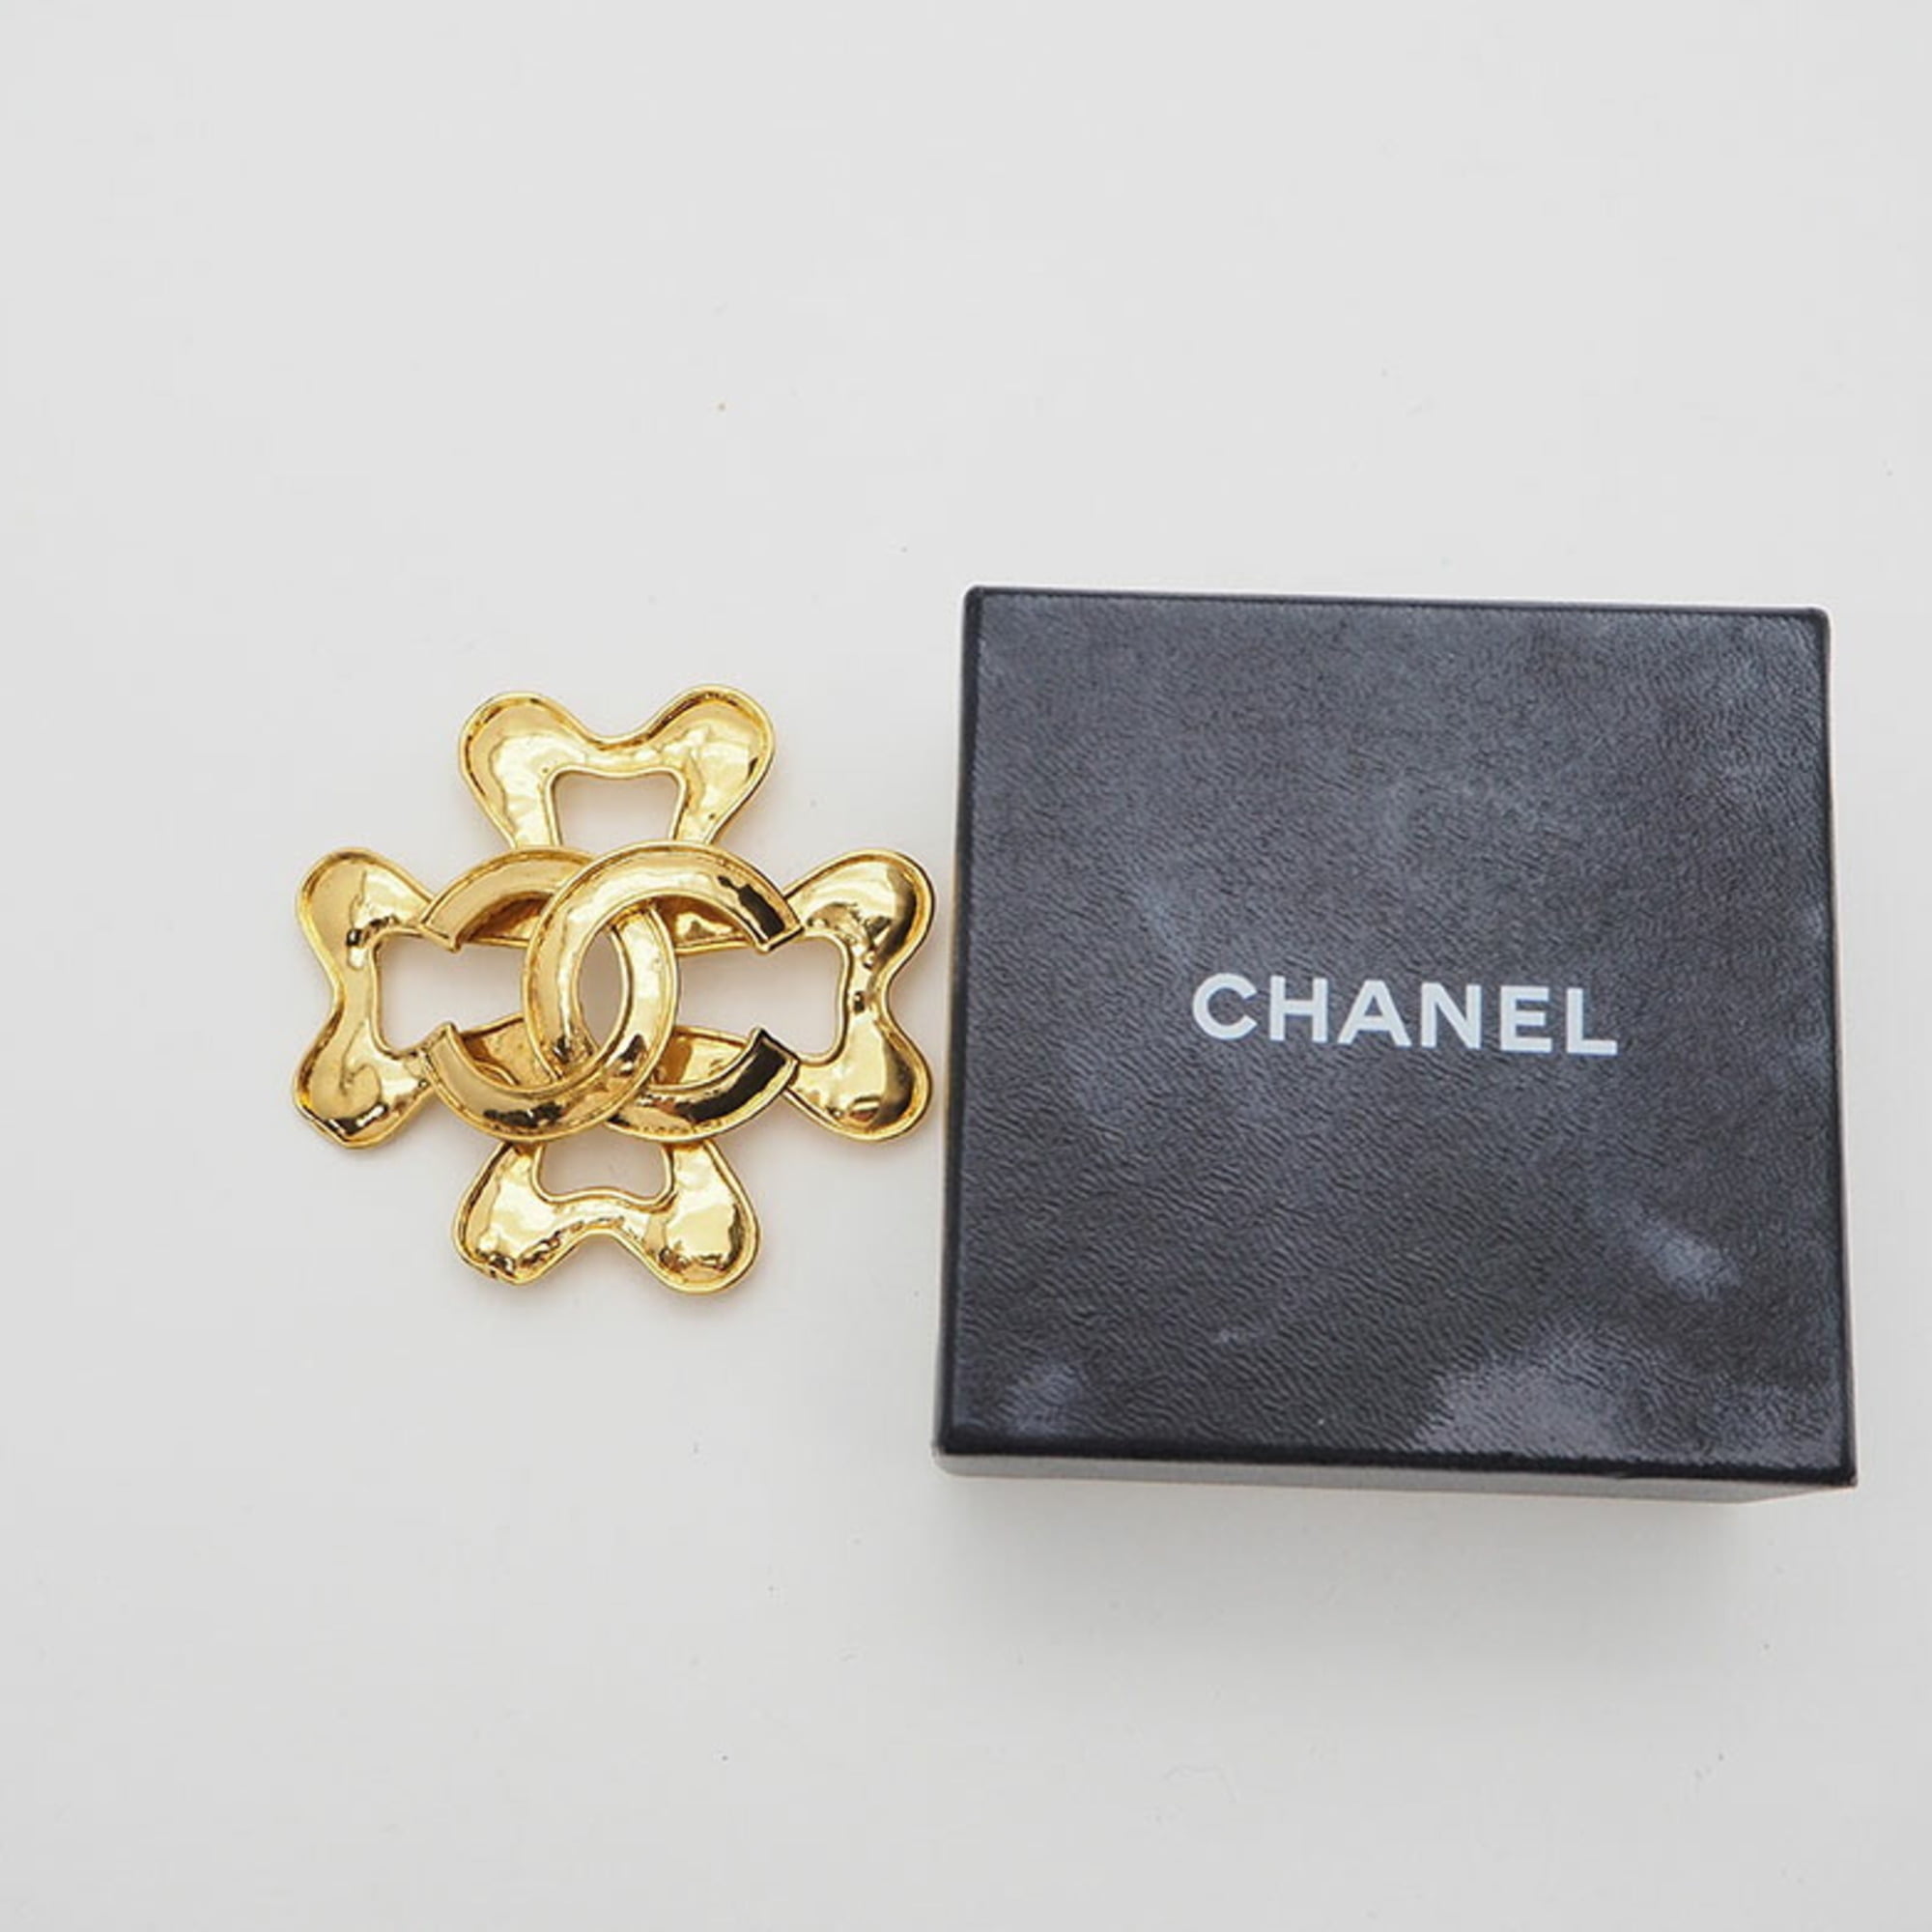 Chanel brooch - Gem